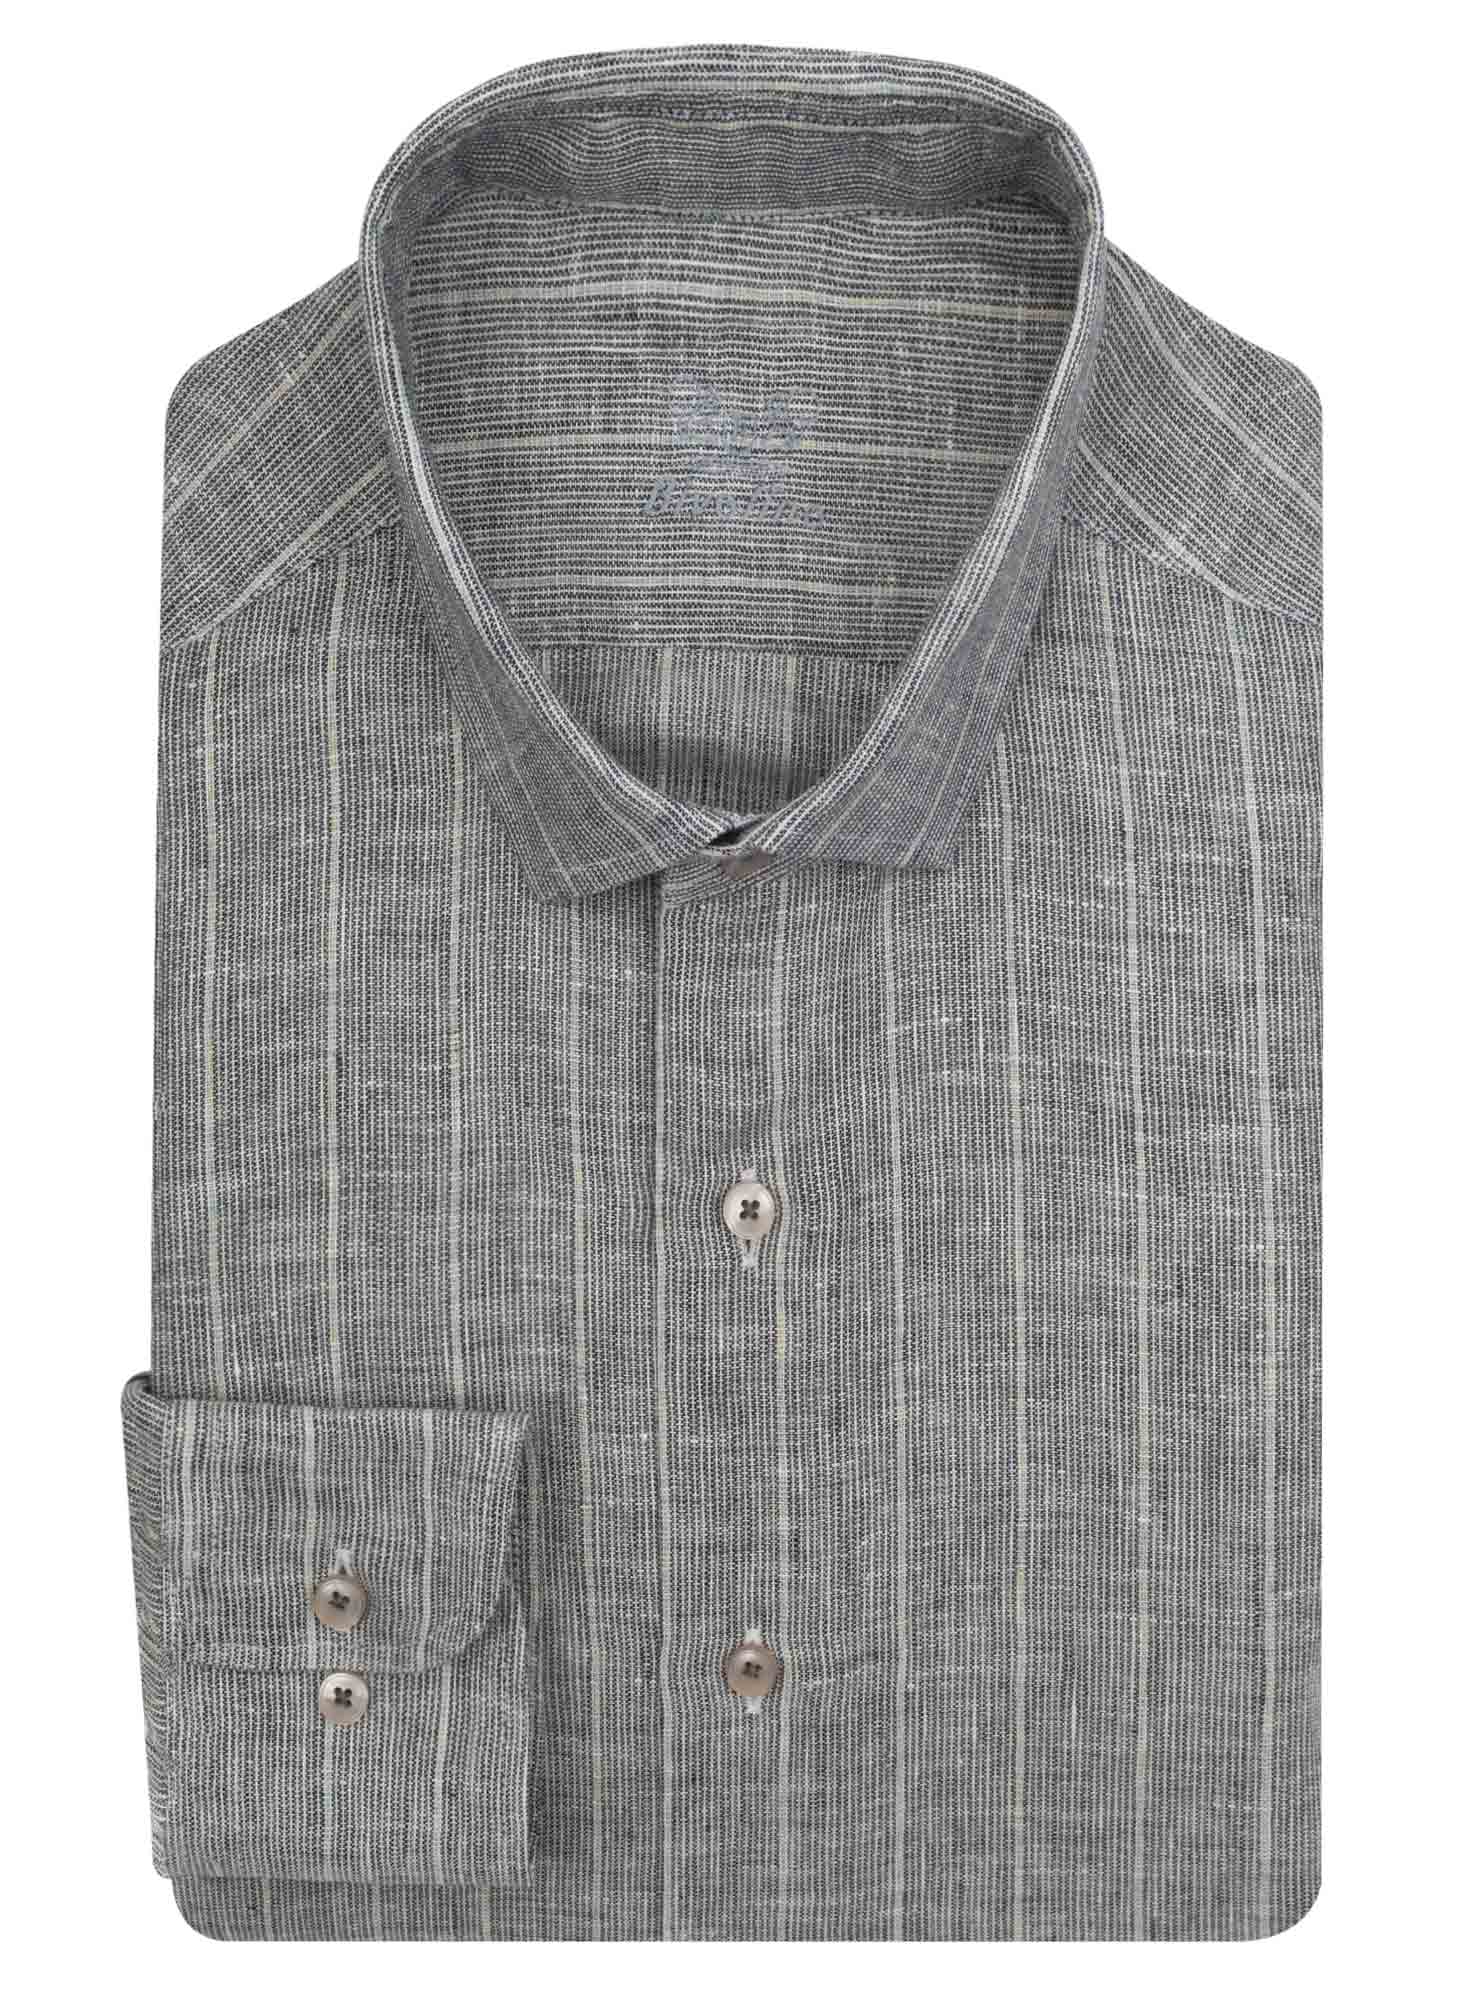 TRAPANI - grijs pinstripe linnen overhemd - NEON 8